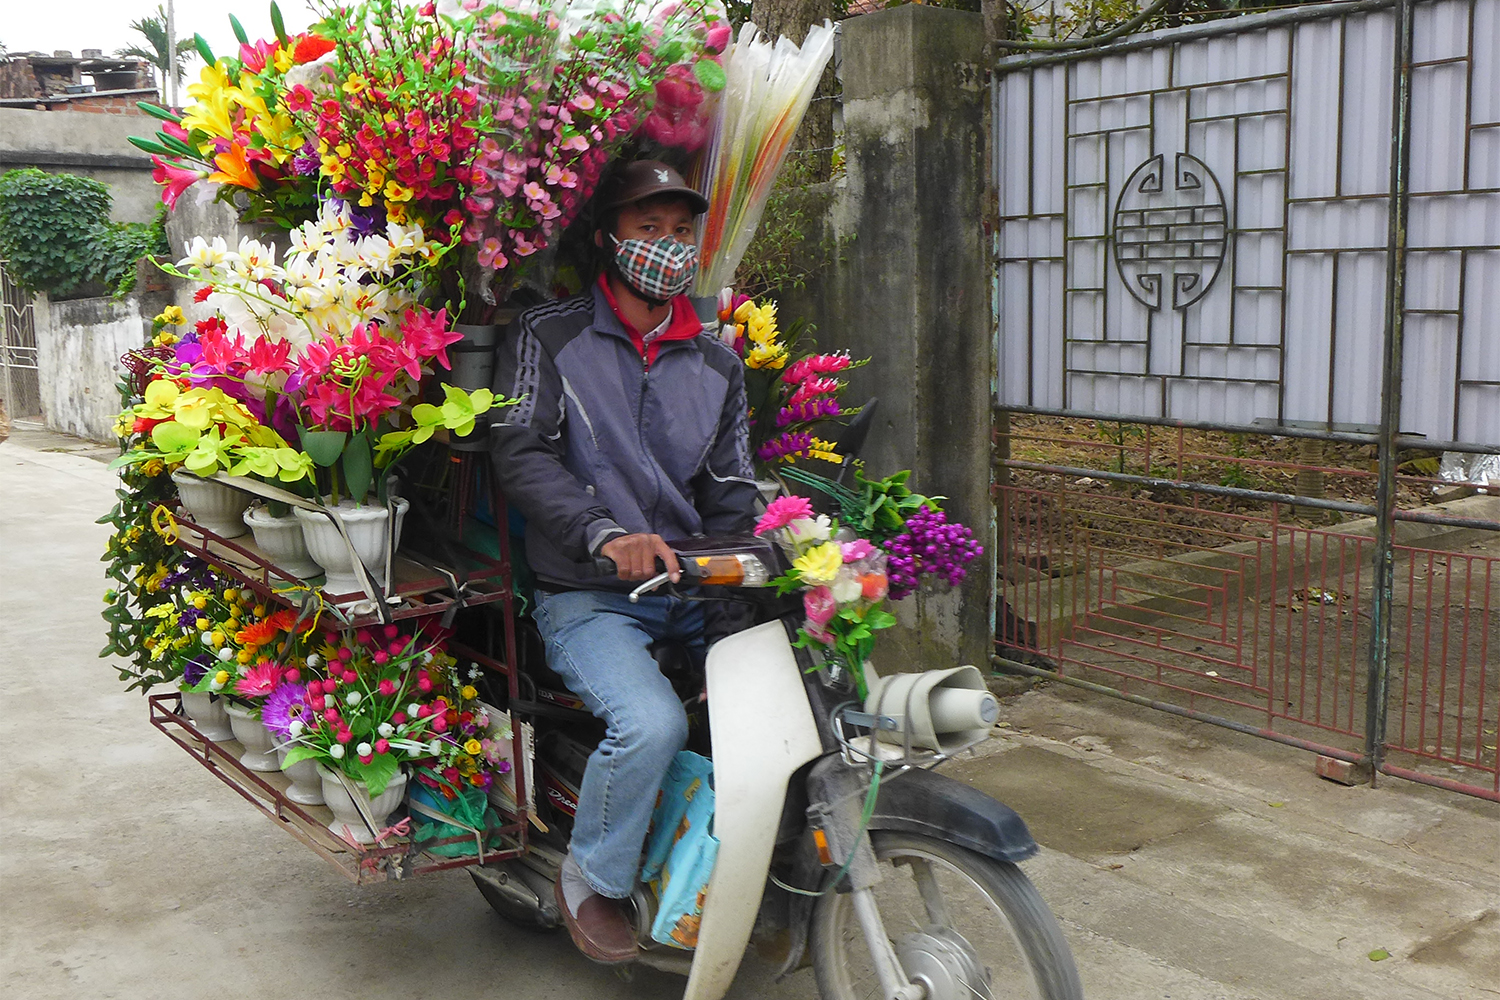 Beaucoup de marchands vendent des fleurs à scooter.